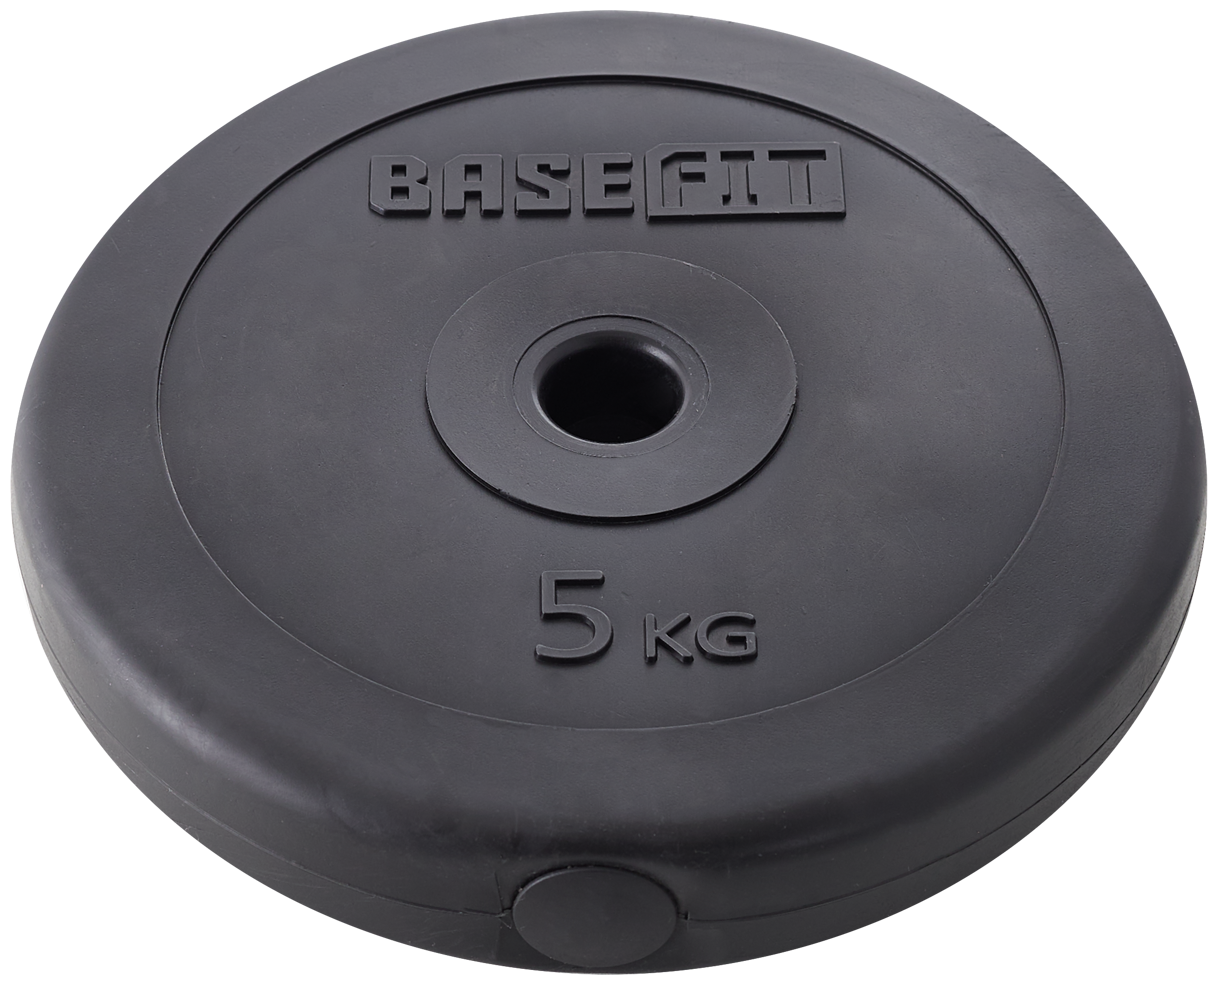 Диск пластиковый BASEFIT BB-203 5 кг, d=26 мм, черный, 2 шт.